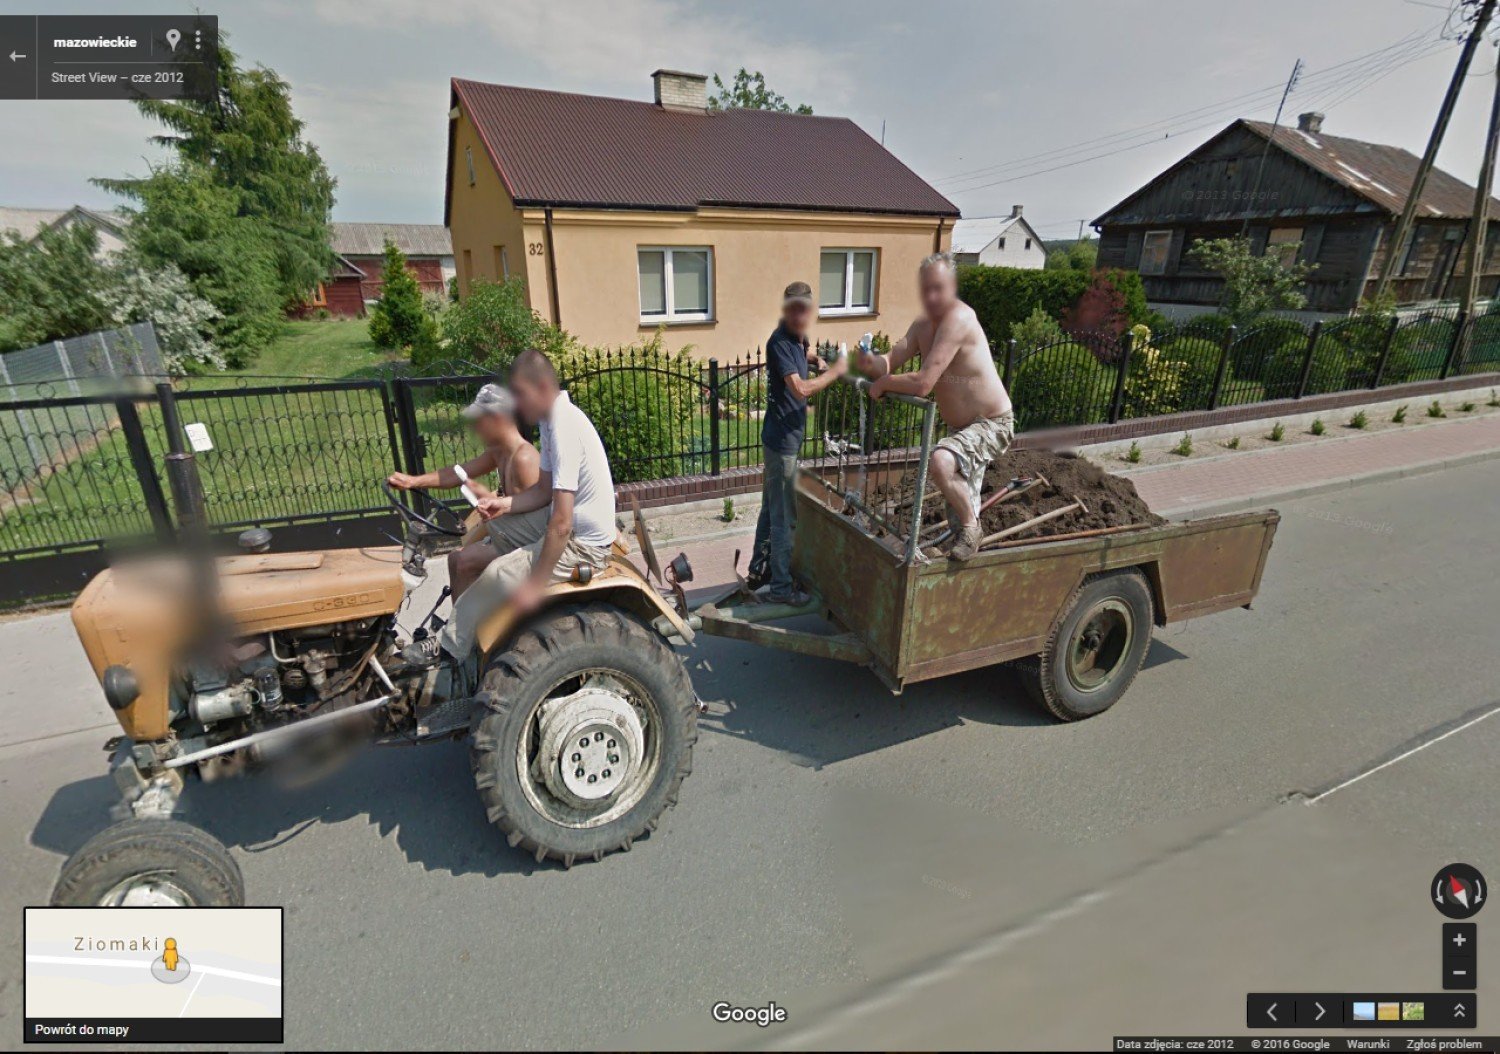 Google Street View Najsmieszniejsze Najdziwniejsze Najbardziej Absurdalne Zdjecia Nowy Sacz Nasze Miasto